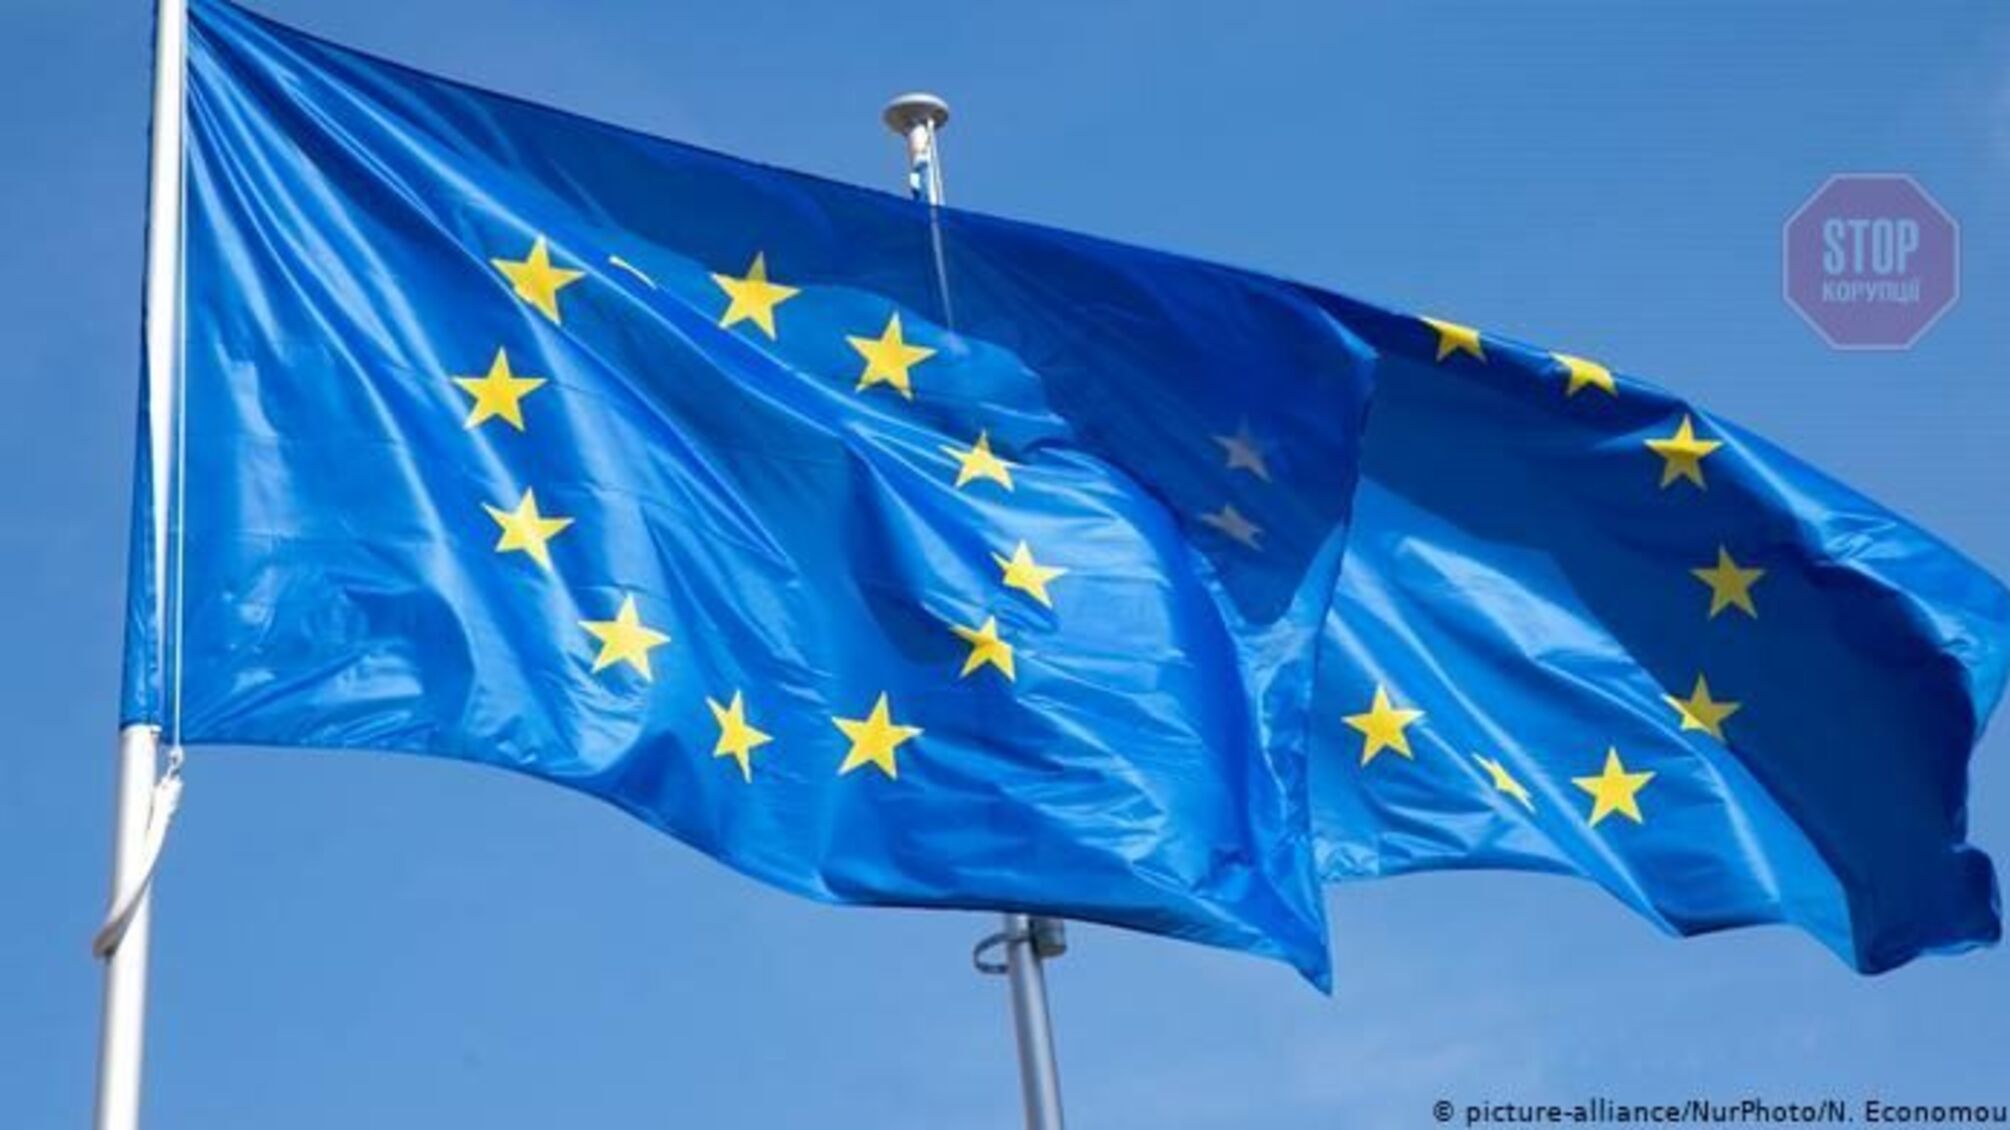 ЕС будет защищать и поддерживать территориальную целостность Украины, — Боррель